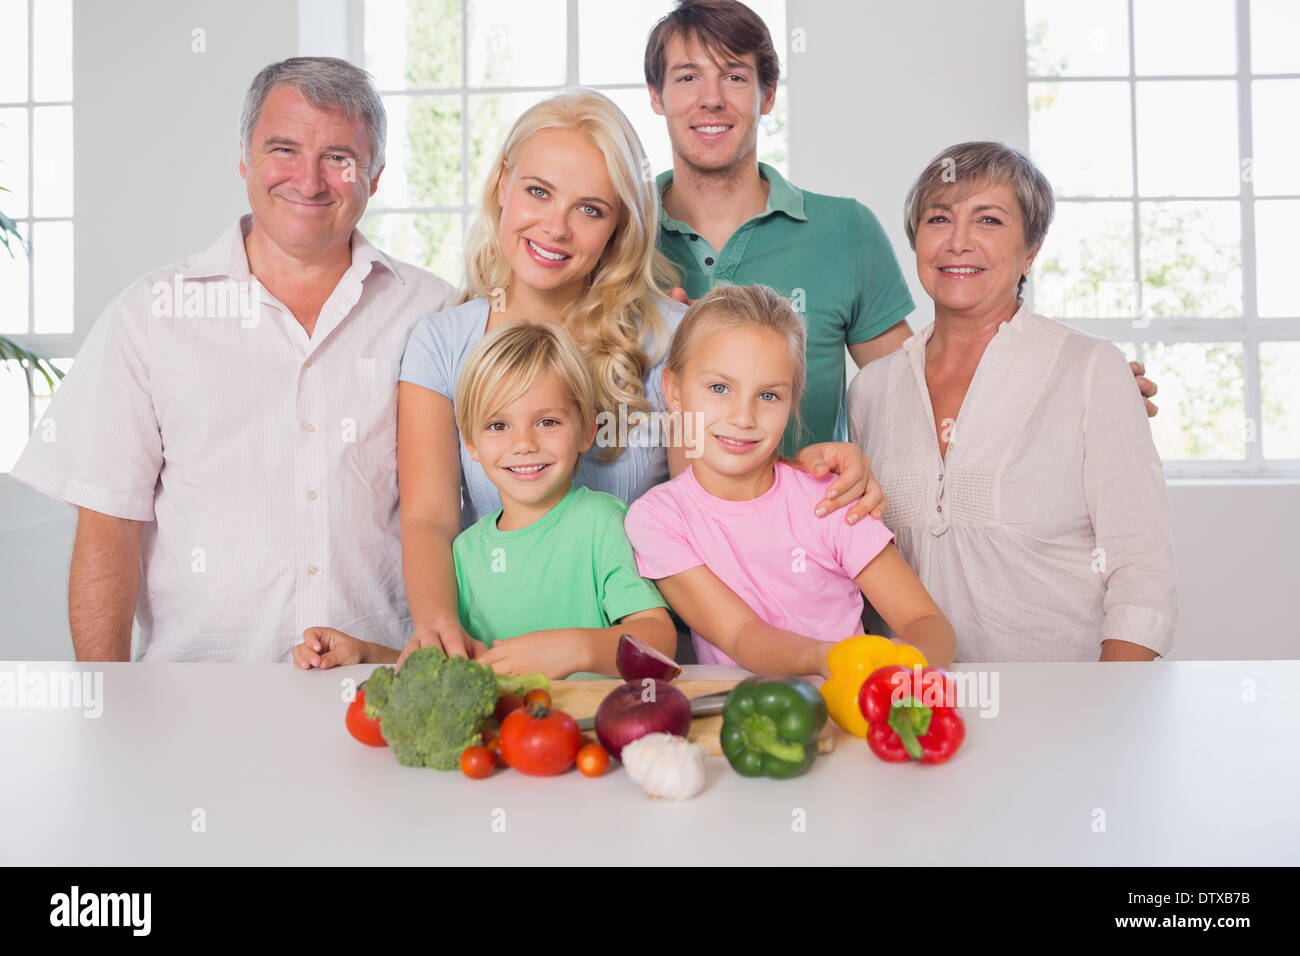 Family smiling avec légumes Banque D'Images